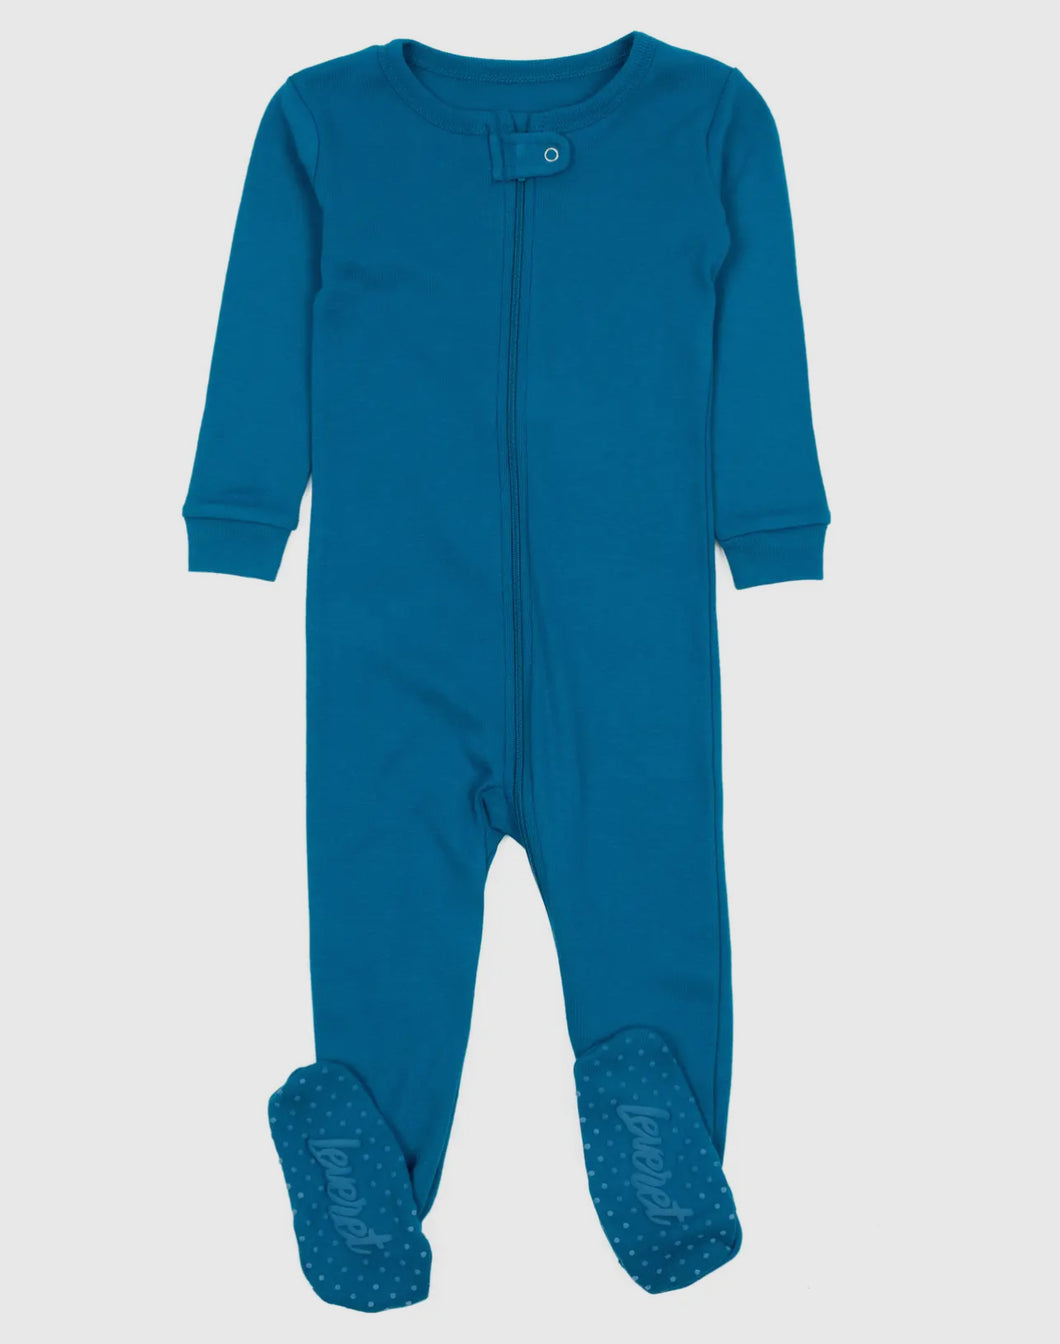 Teal Blue Pajamas